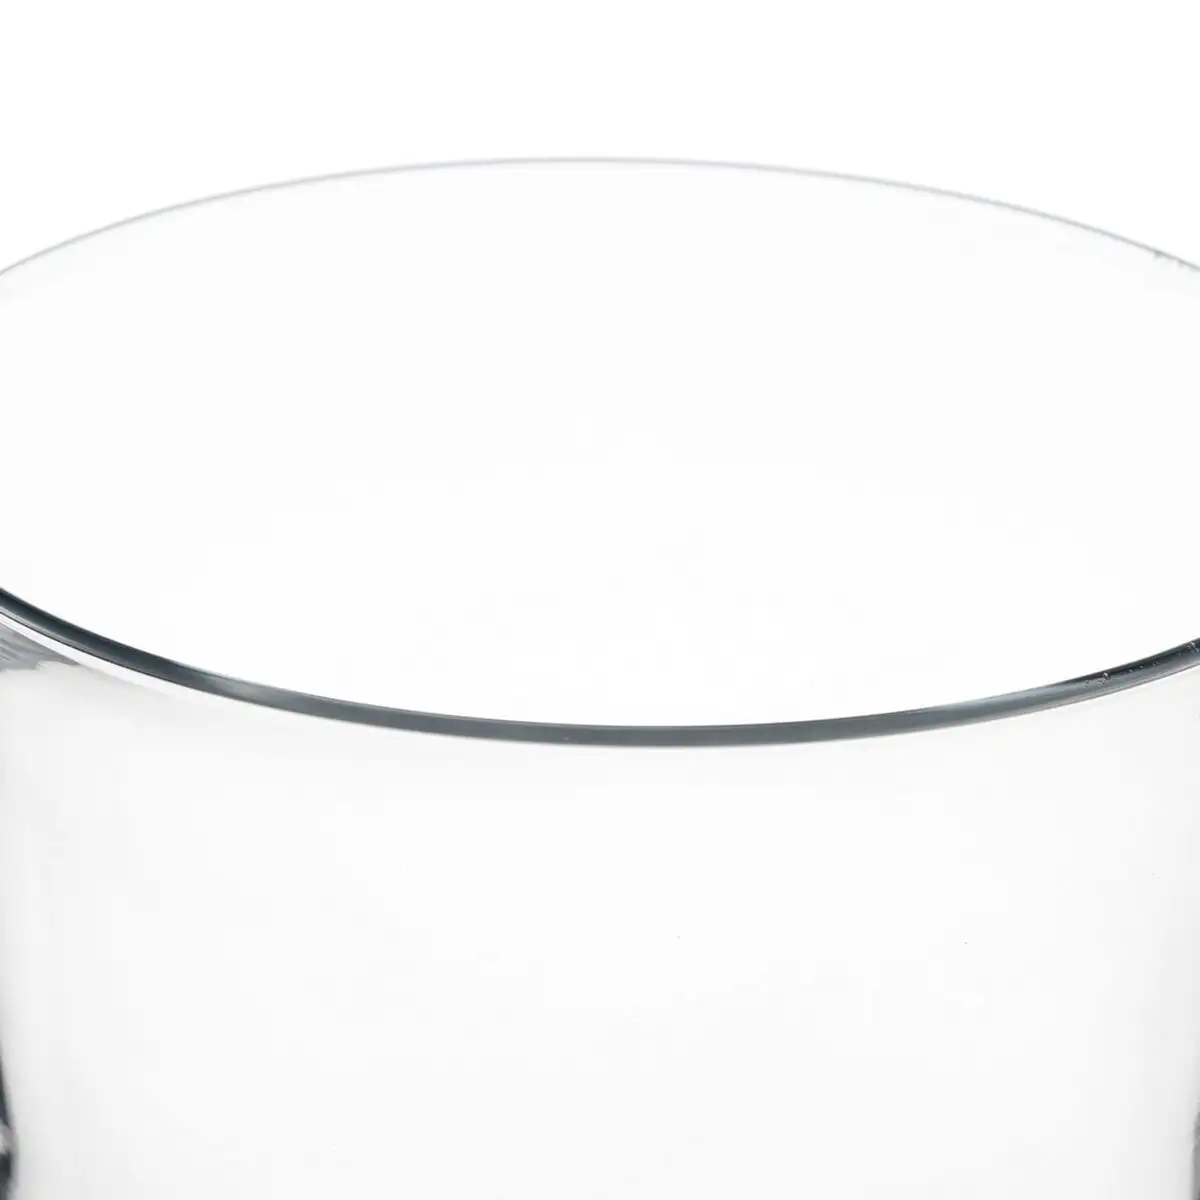 Vase cristal transparent 22 x 22 x 28 cm_6616. DIAYTAR SENEGAL - Où Choisir Devient une Expression de Soi. Découvrez notre boutique en ligne et trouvez des articles qui révèlent votre personnalité et votre style.